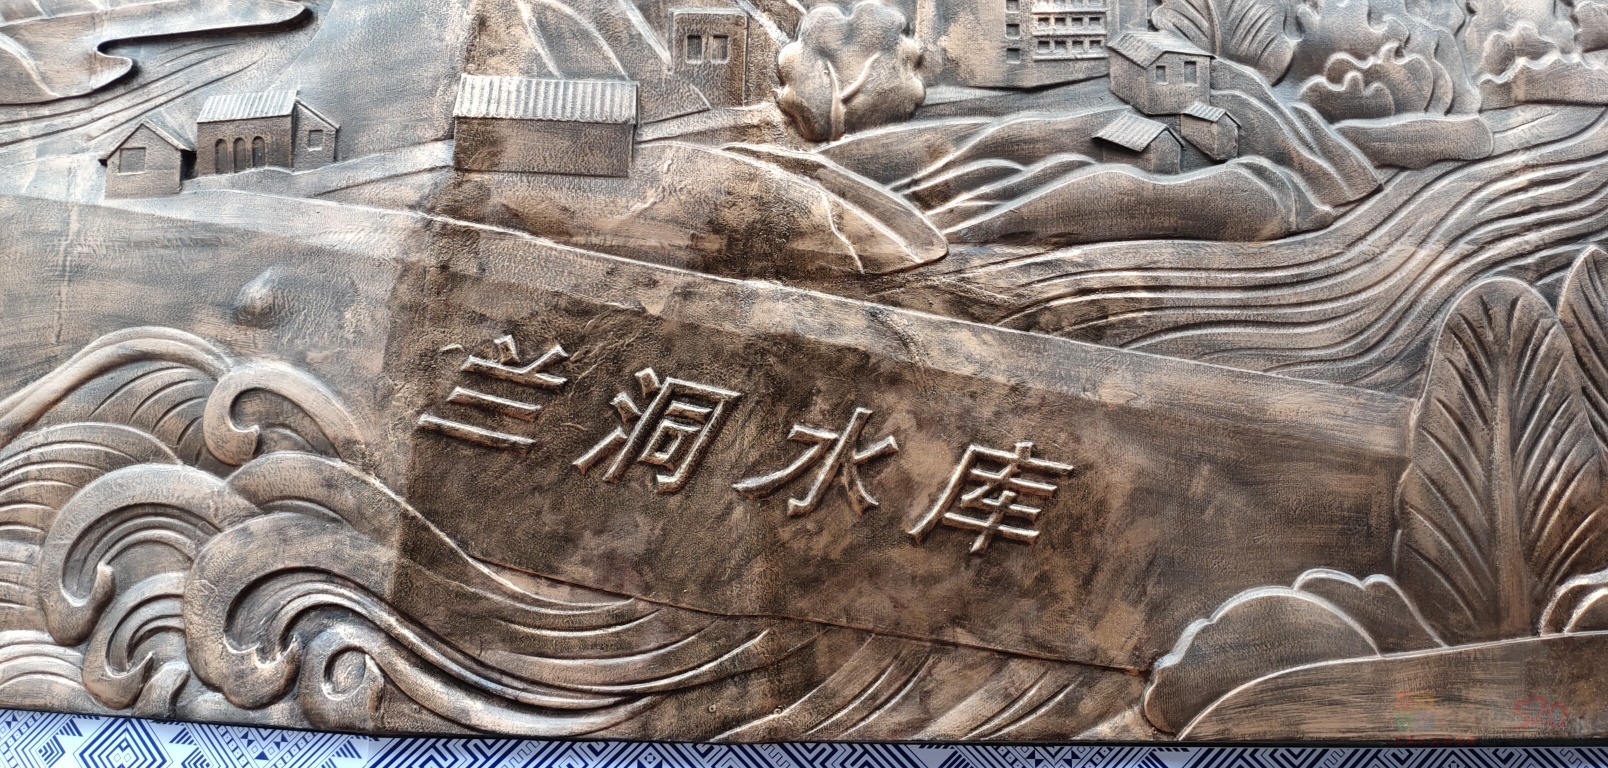 黄竹岗风雨桥的壁画328 / 作者:瑤人老李 / 帖子ID:293697